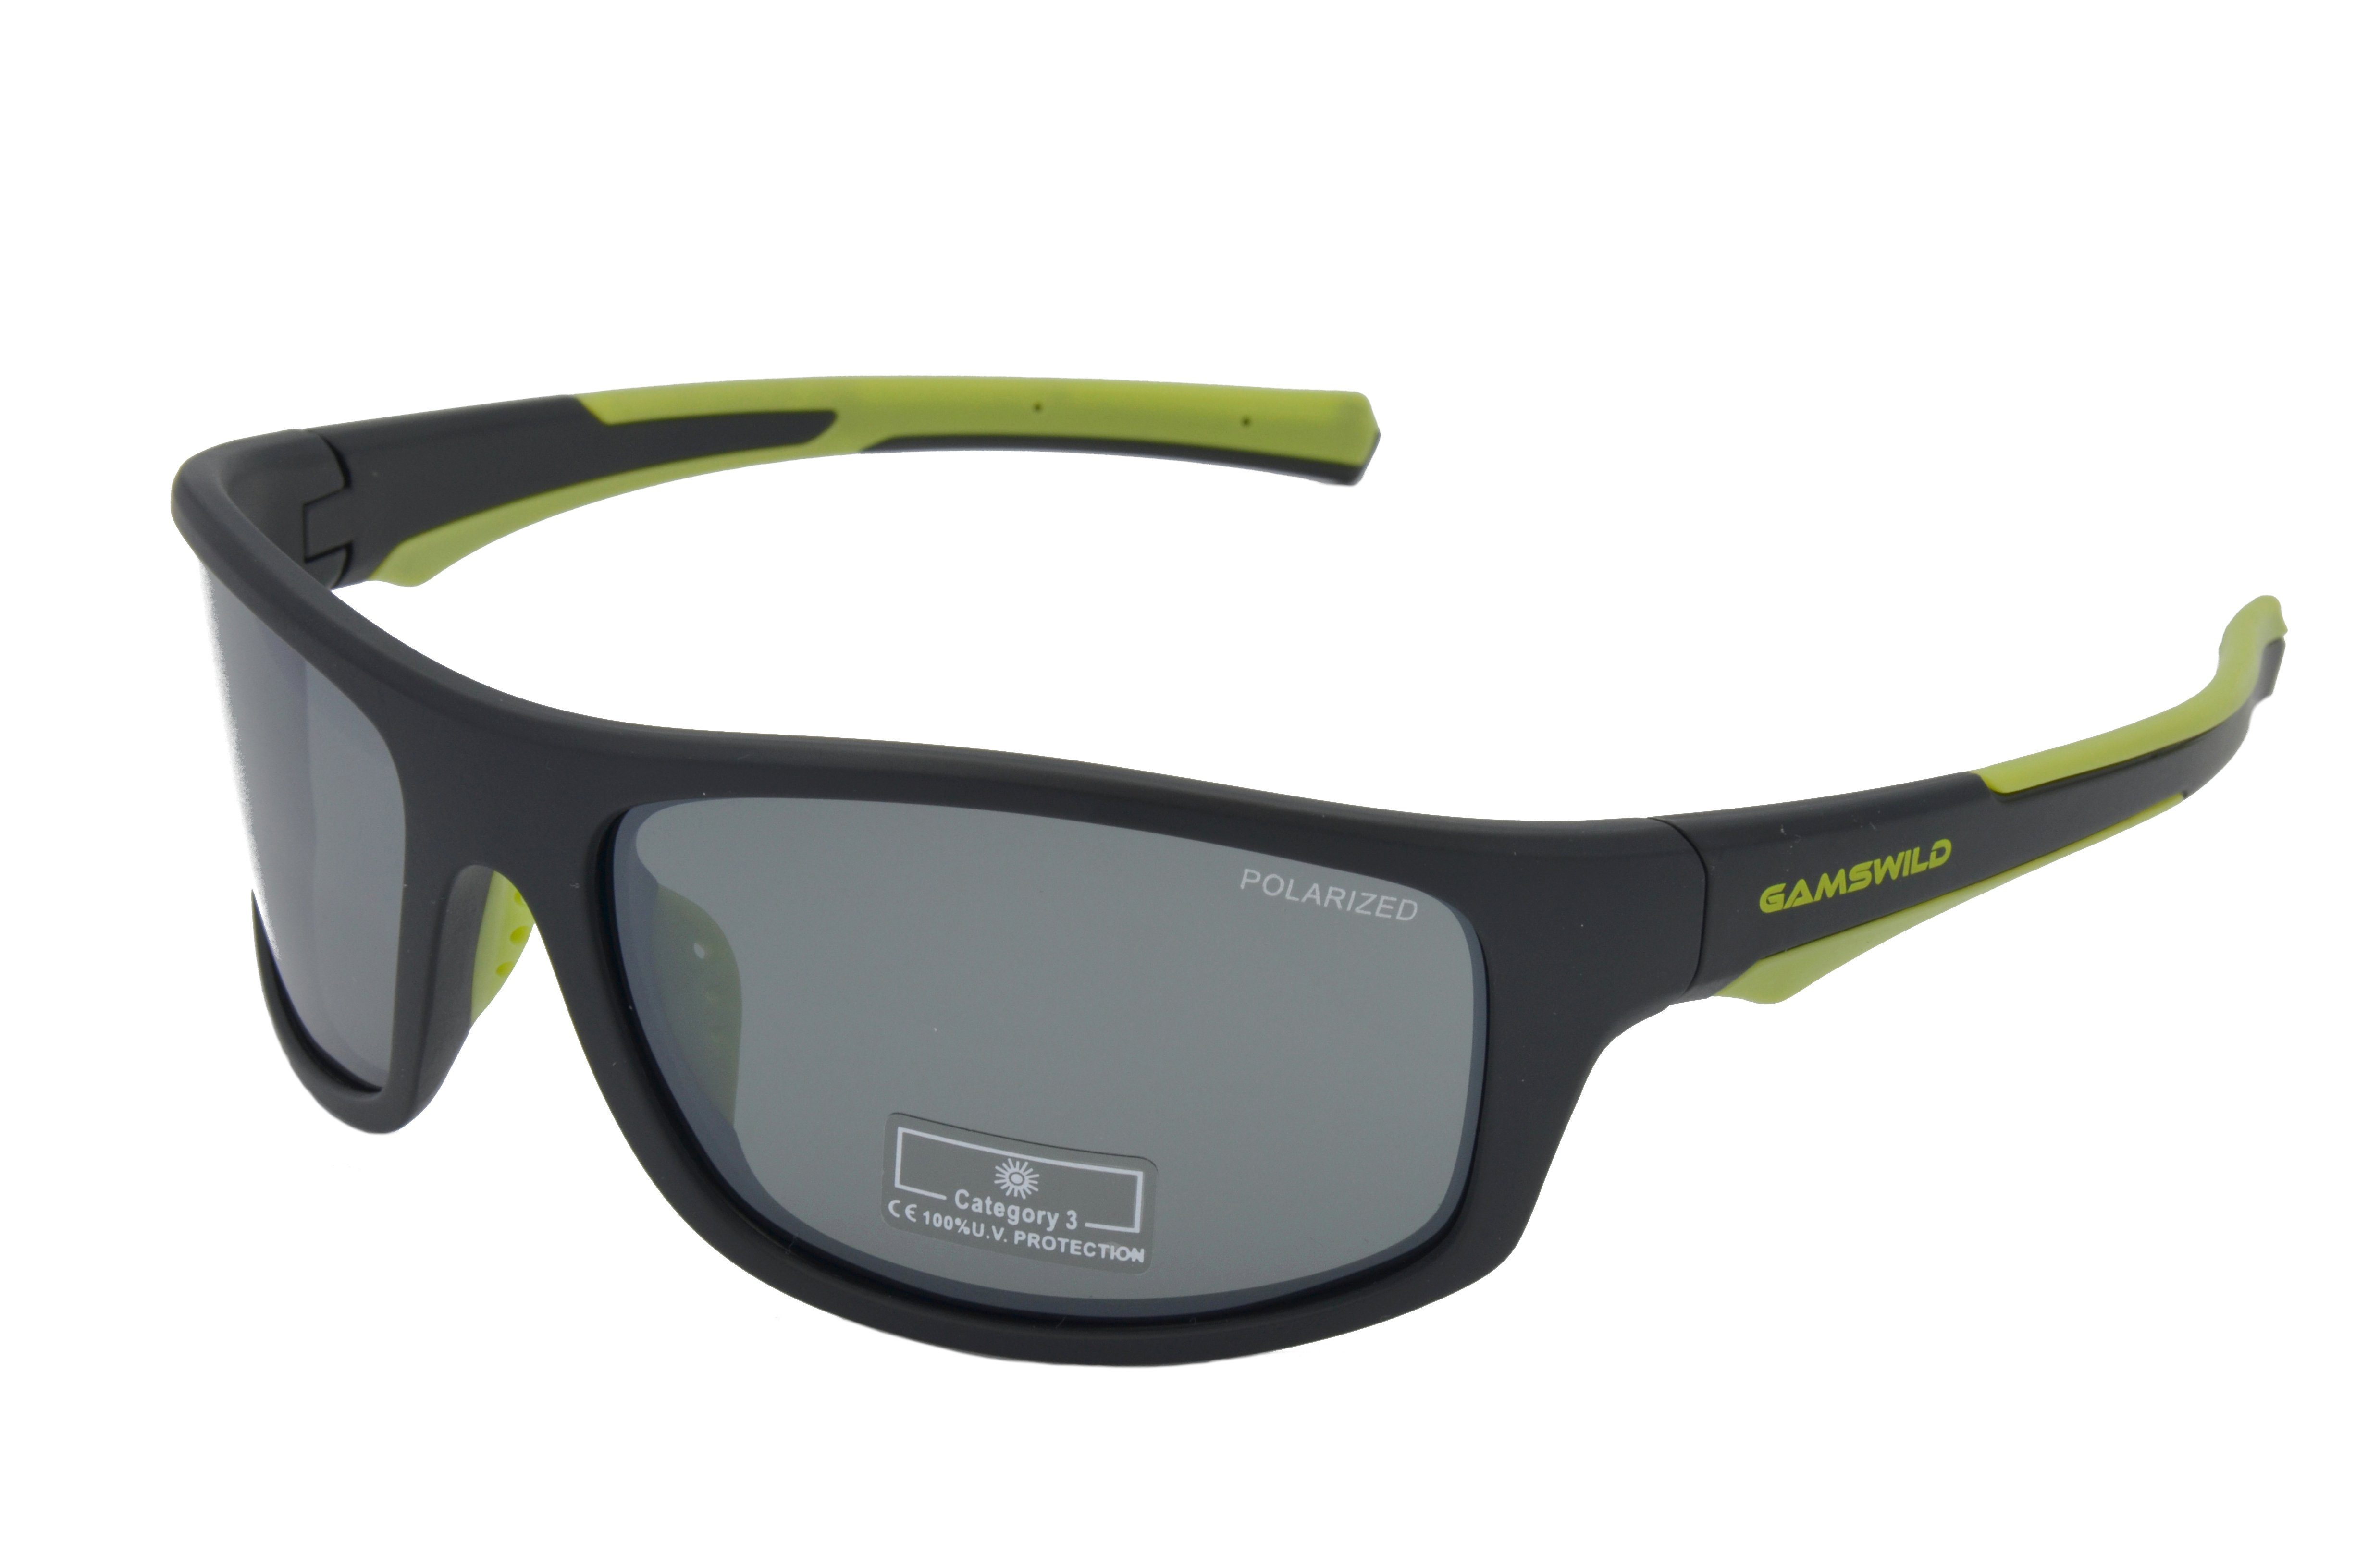 Gamswild Sportbrille WS2238 Sonnenbrille Damen / Unisex, blau, polarisiert, TR90 Herren -orange, schwarz-grün schwarz-rot, -grün Skibrille grau, Fahrradbrille